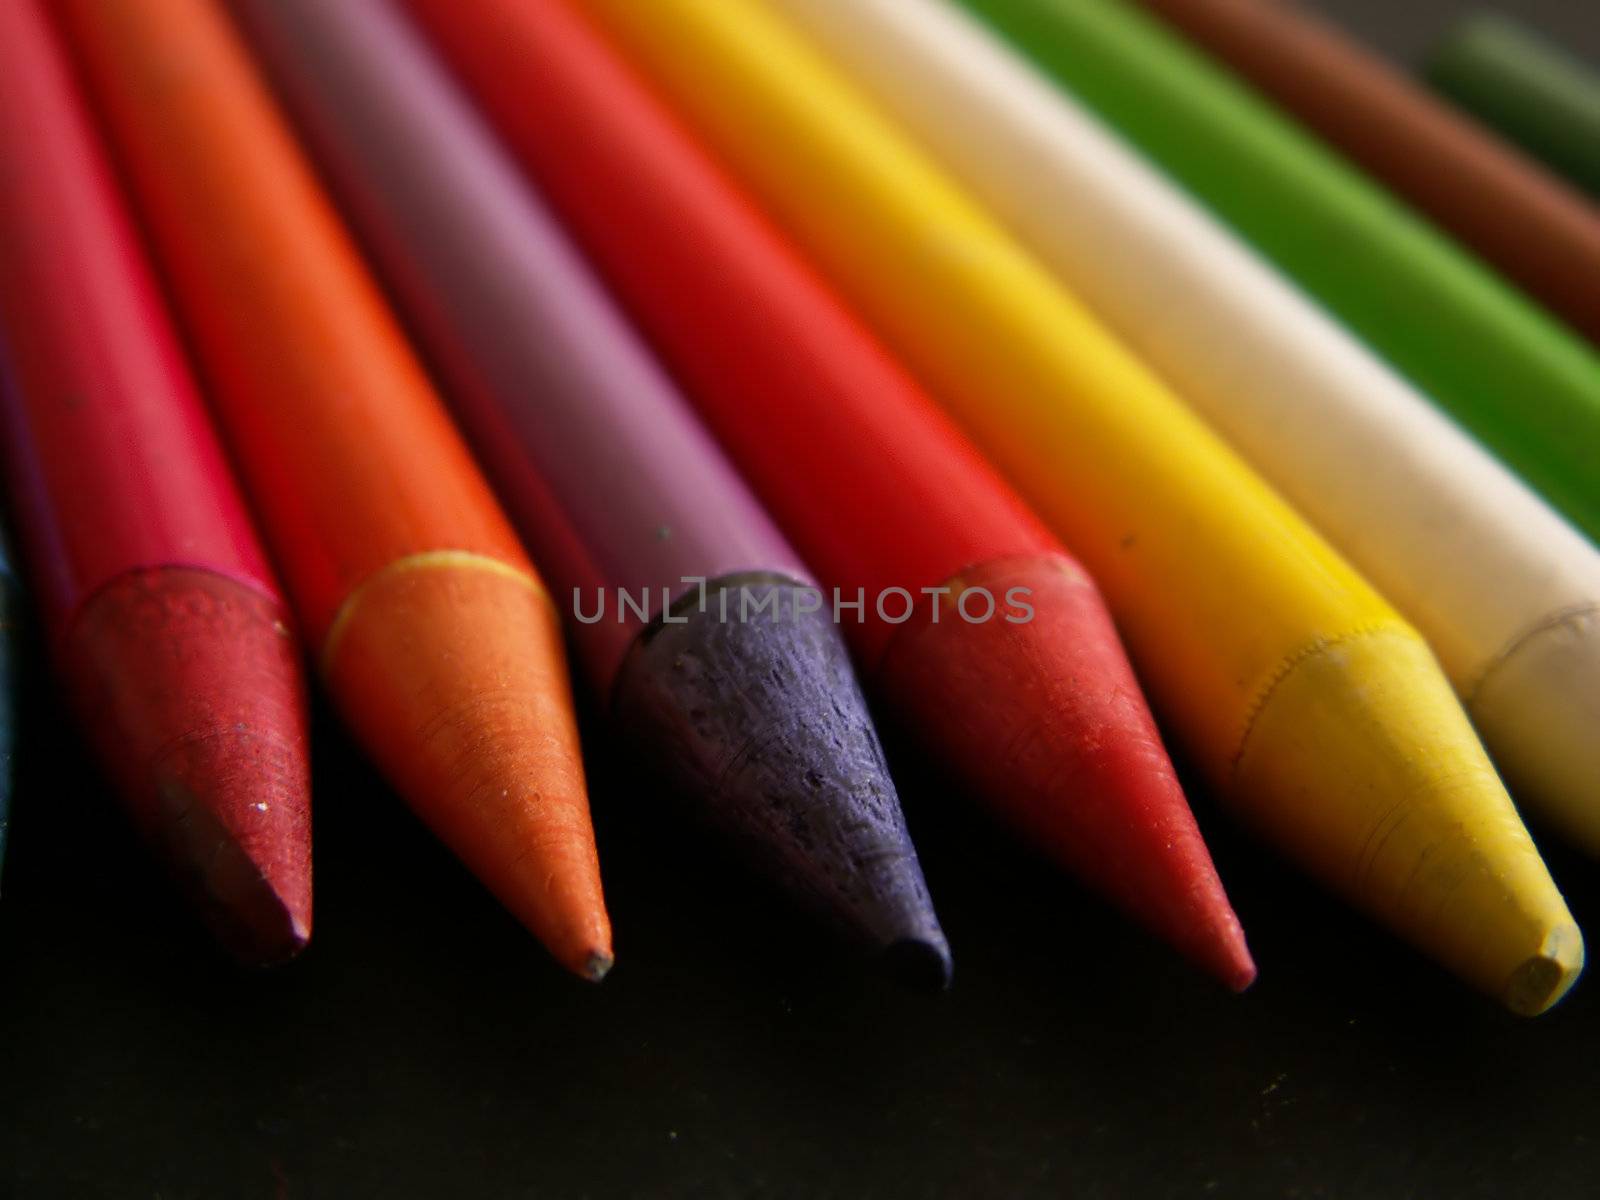 detail of colour pencils